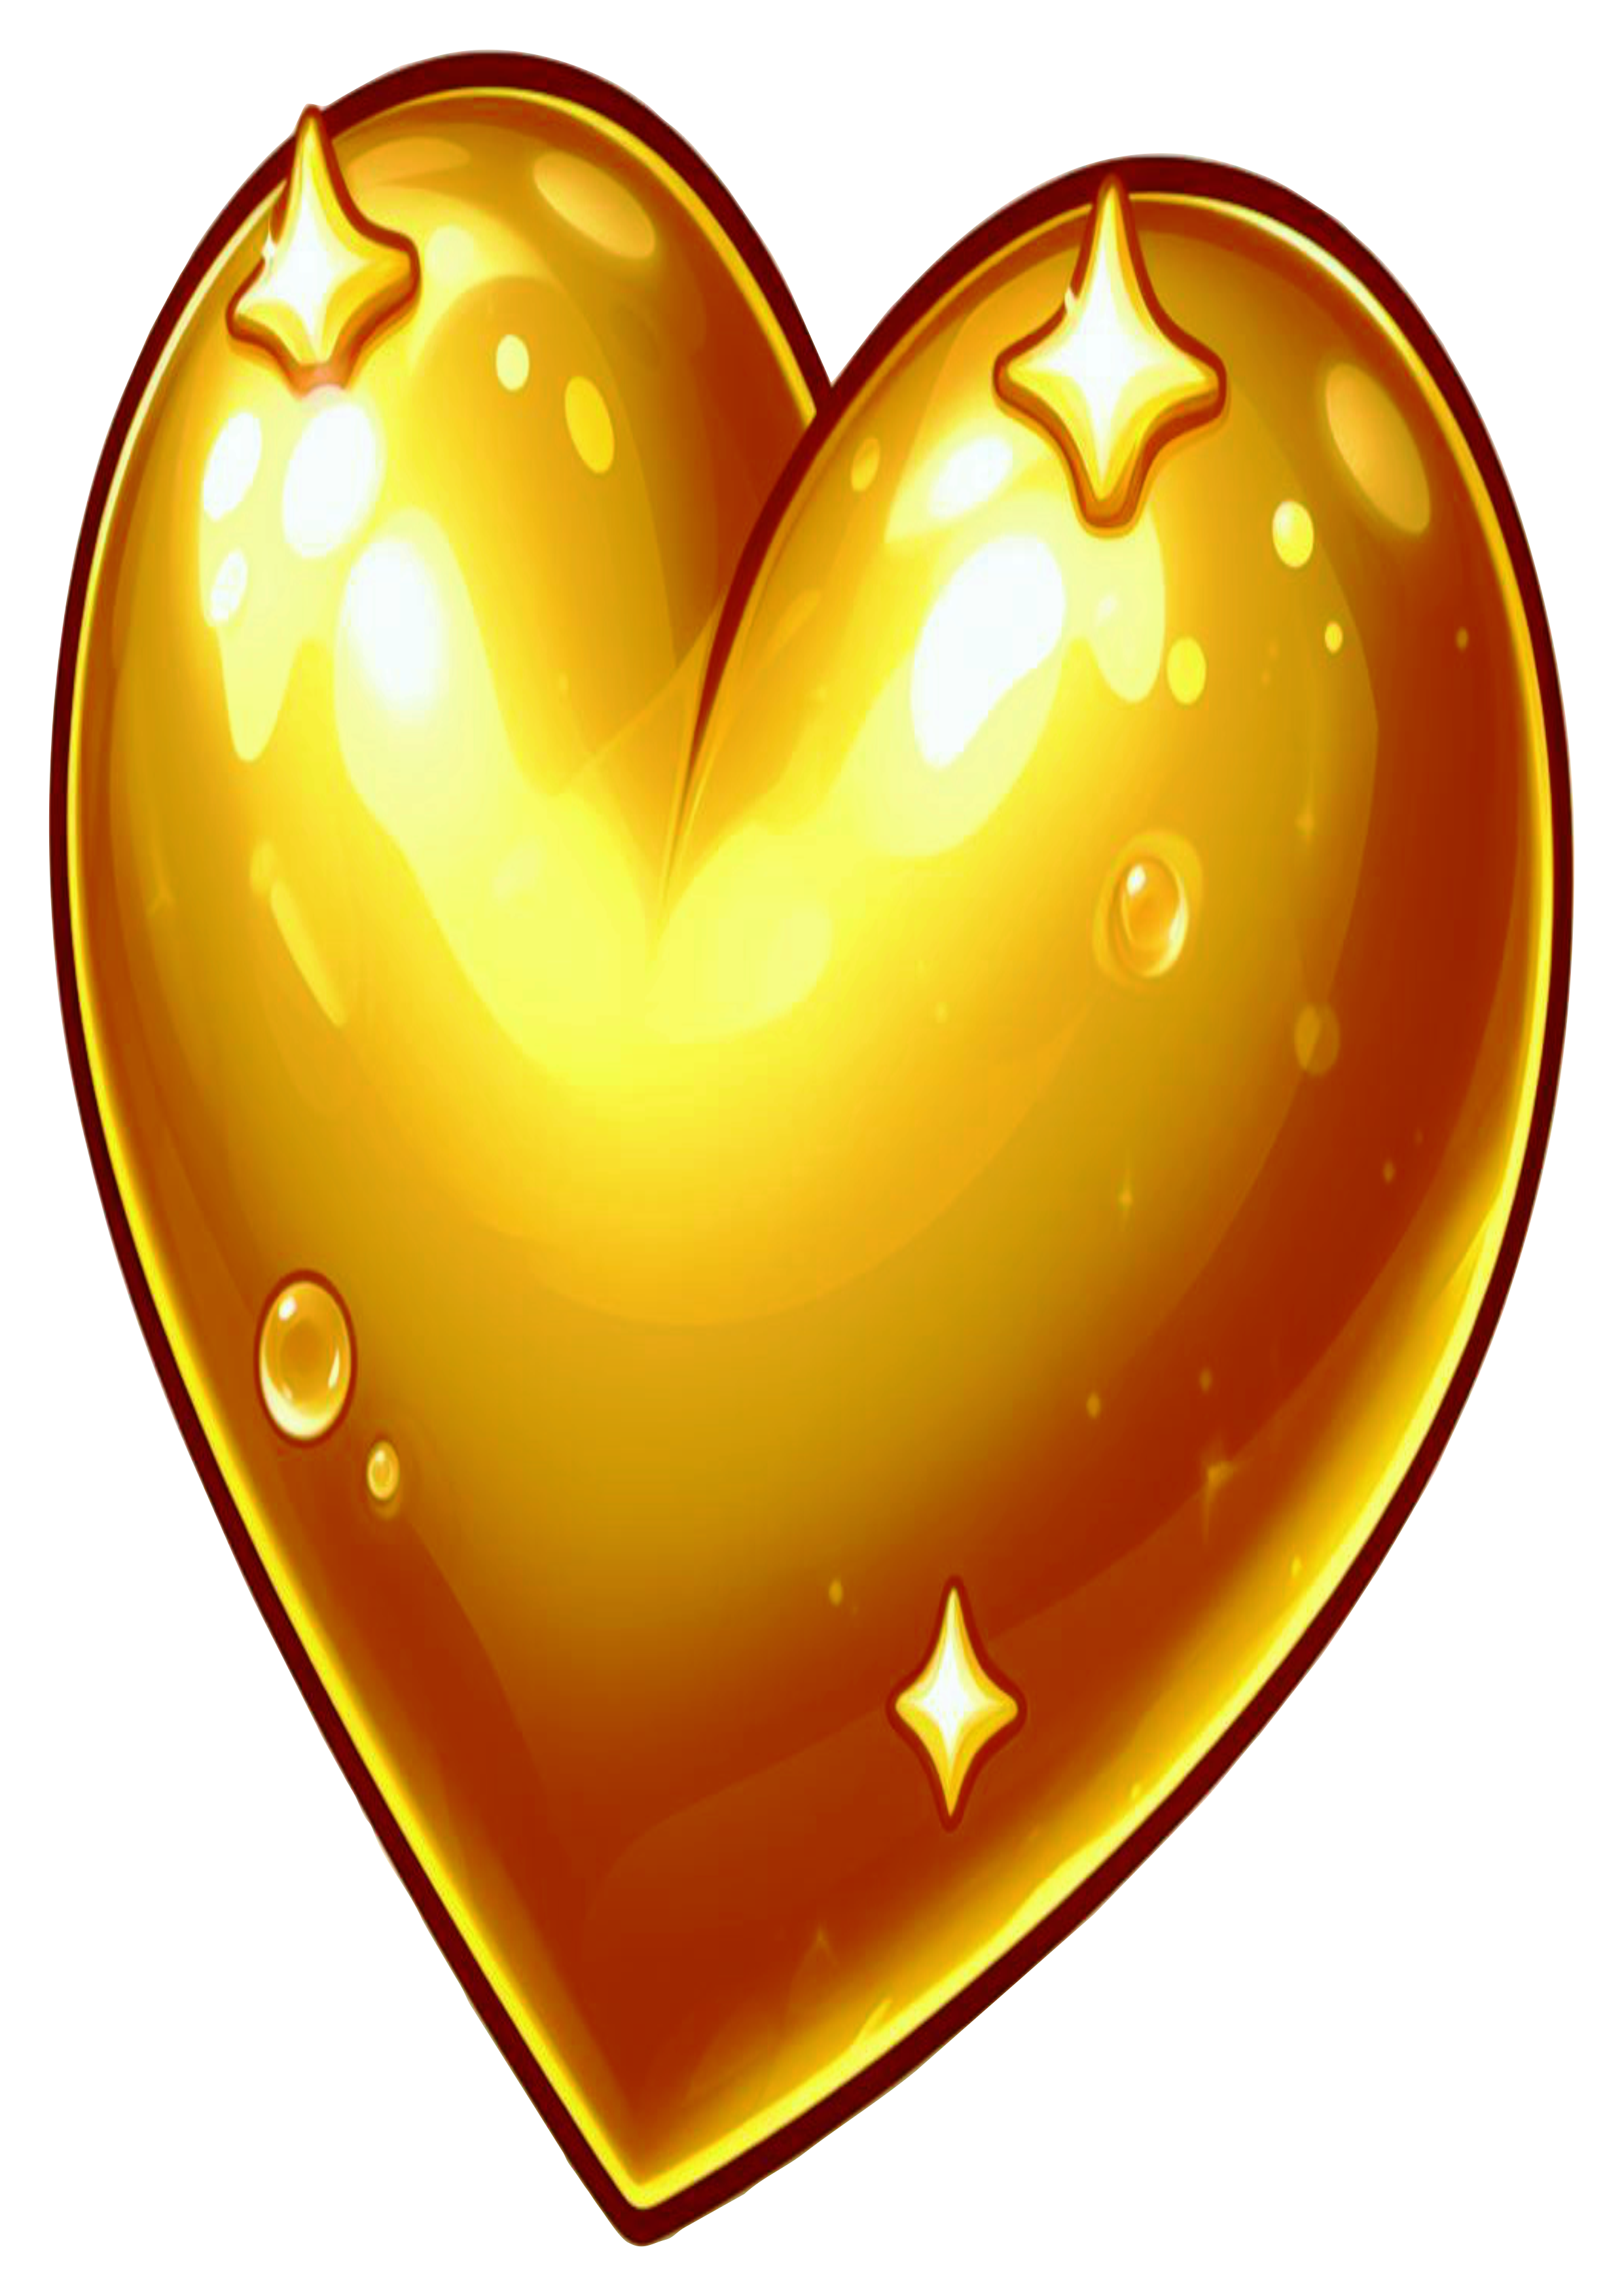 Coração dourado png golden heart fundo transparente clipart vetor ilustração